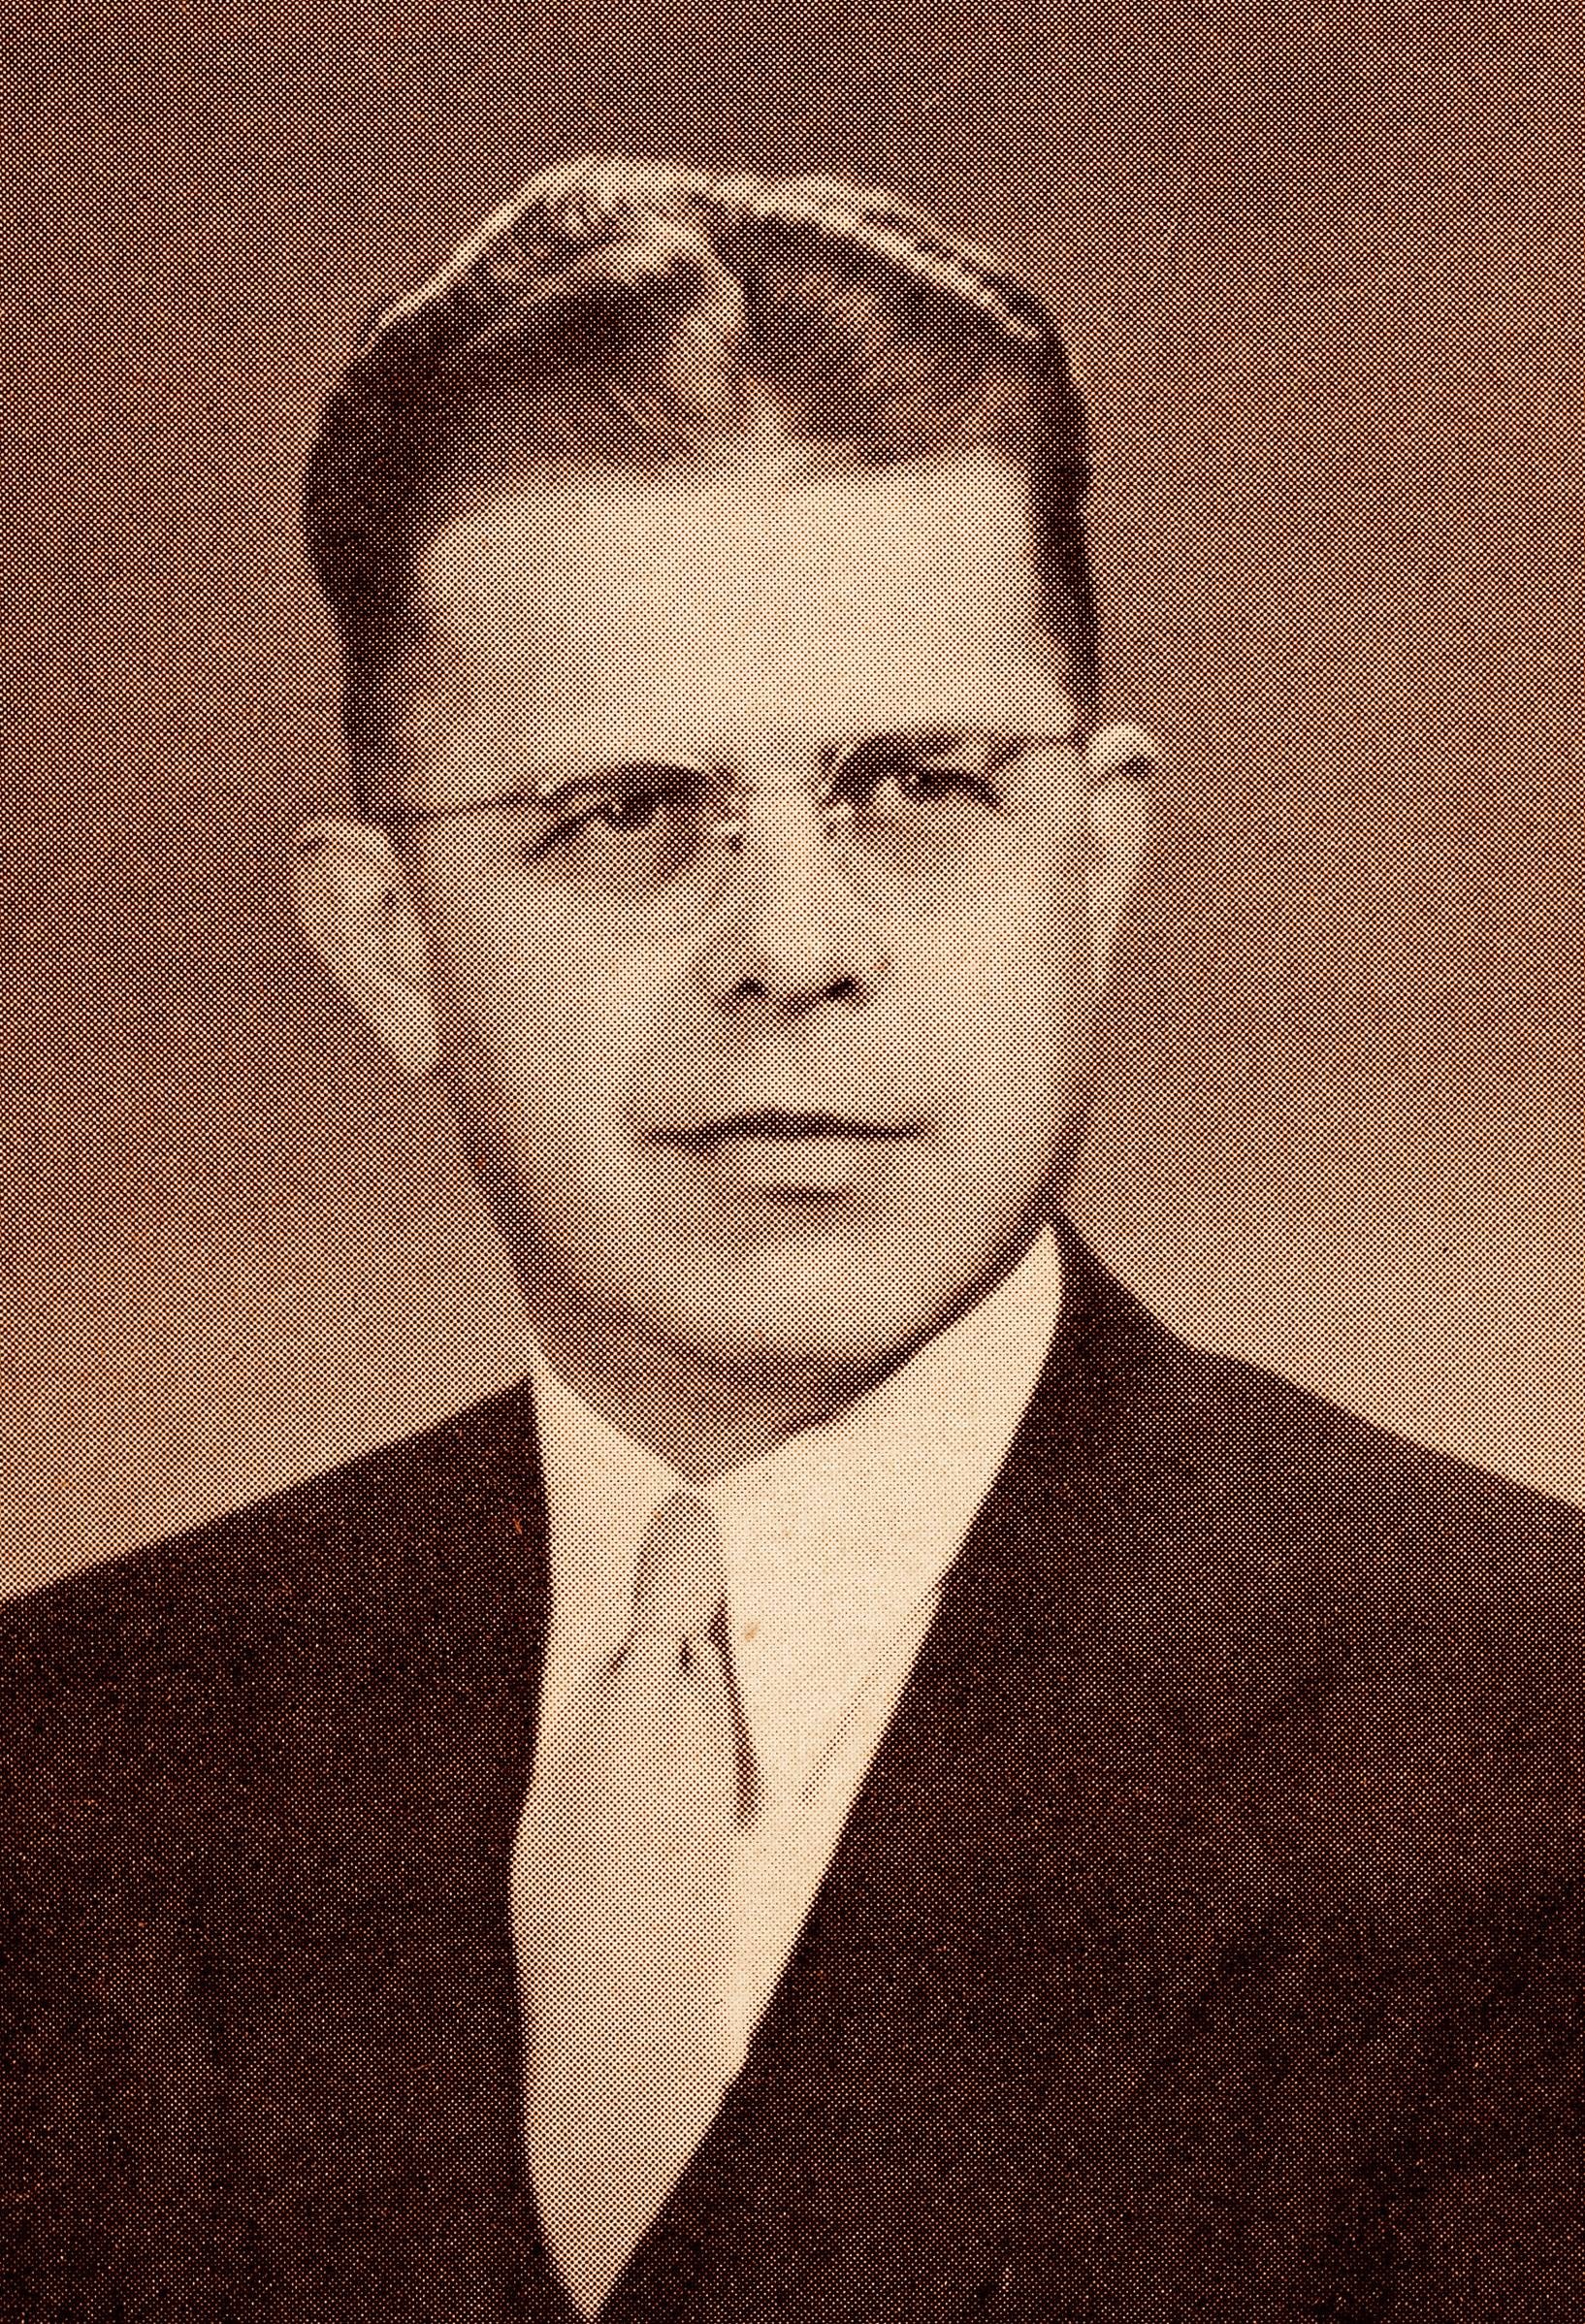 Walter H. Beuttler